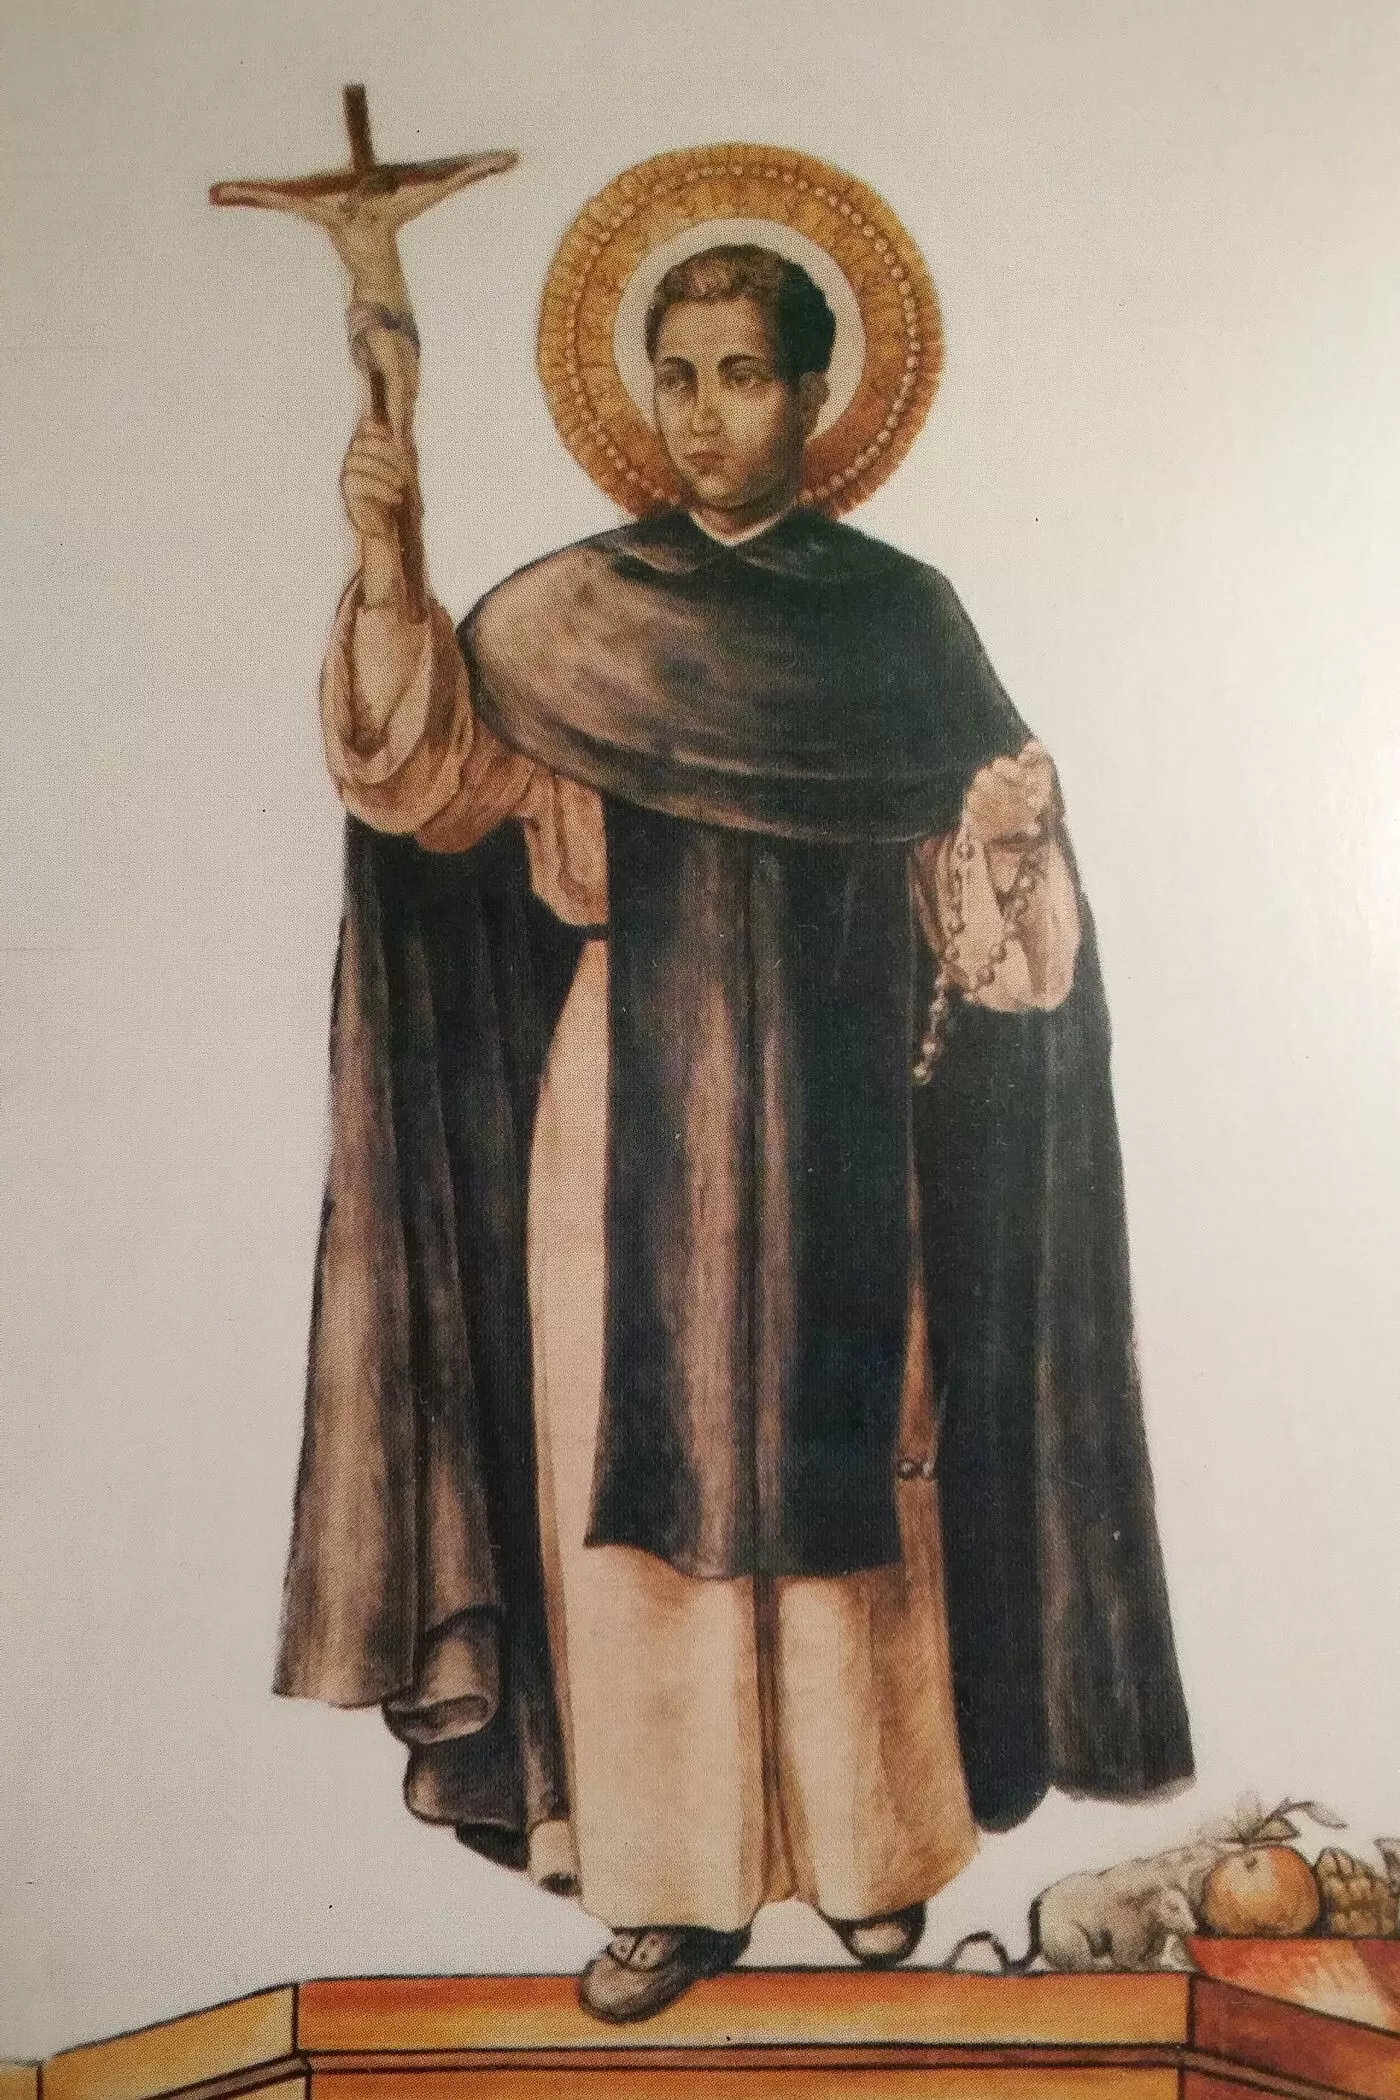 St. Martin de Porres, O.P.